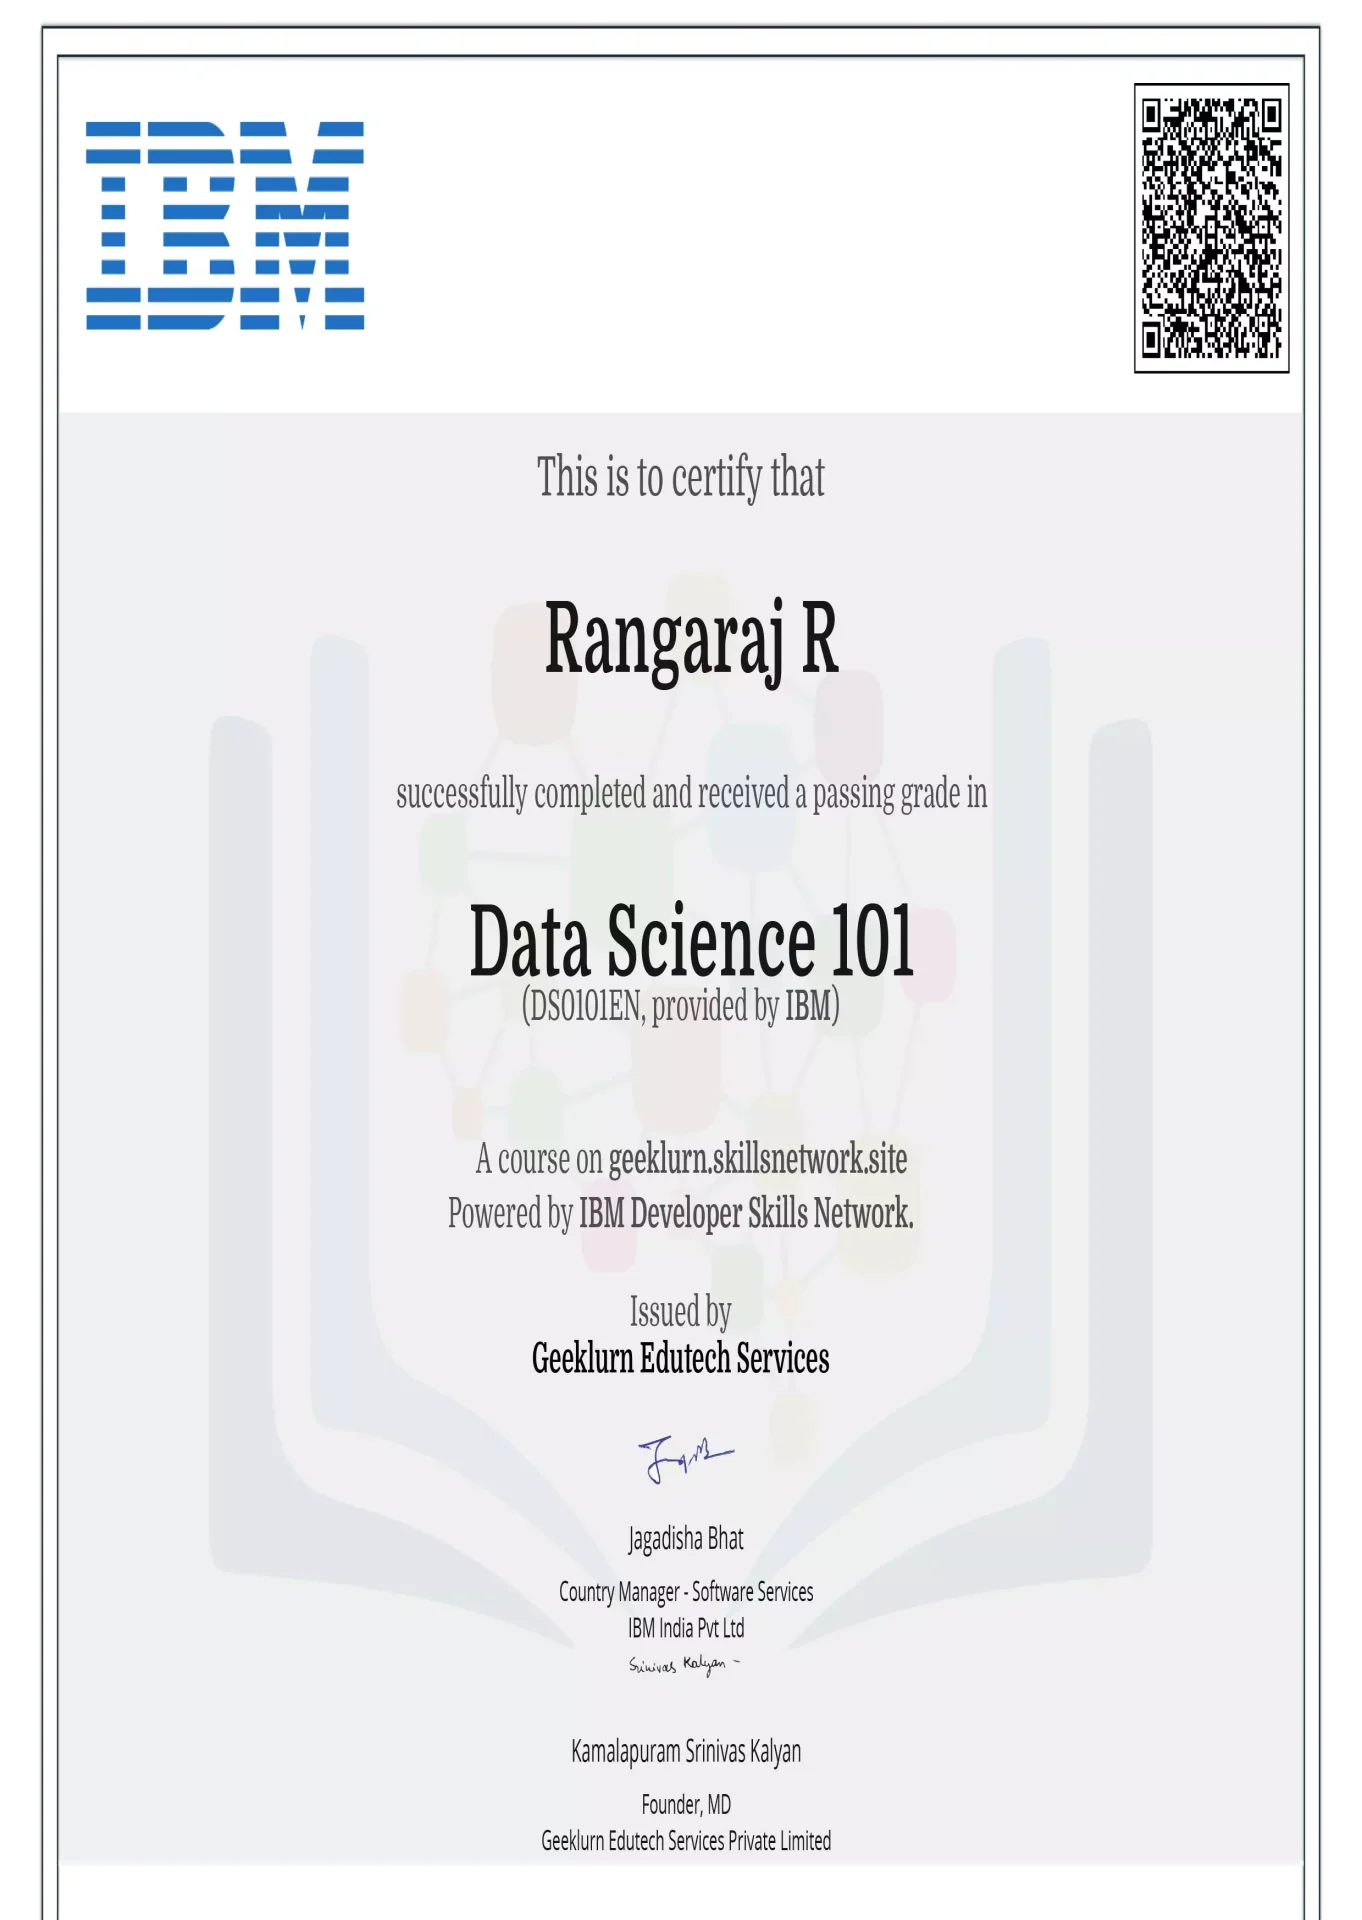 ibm-ds0101en-certificate-geeklurn-edutech-services-6